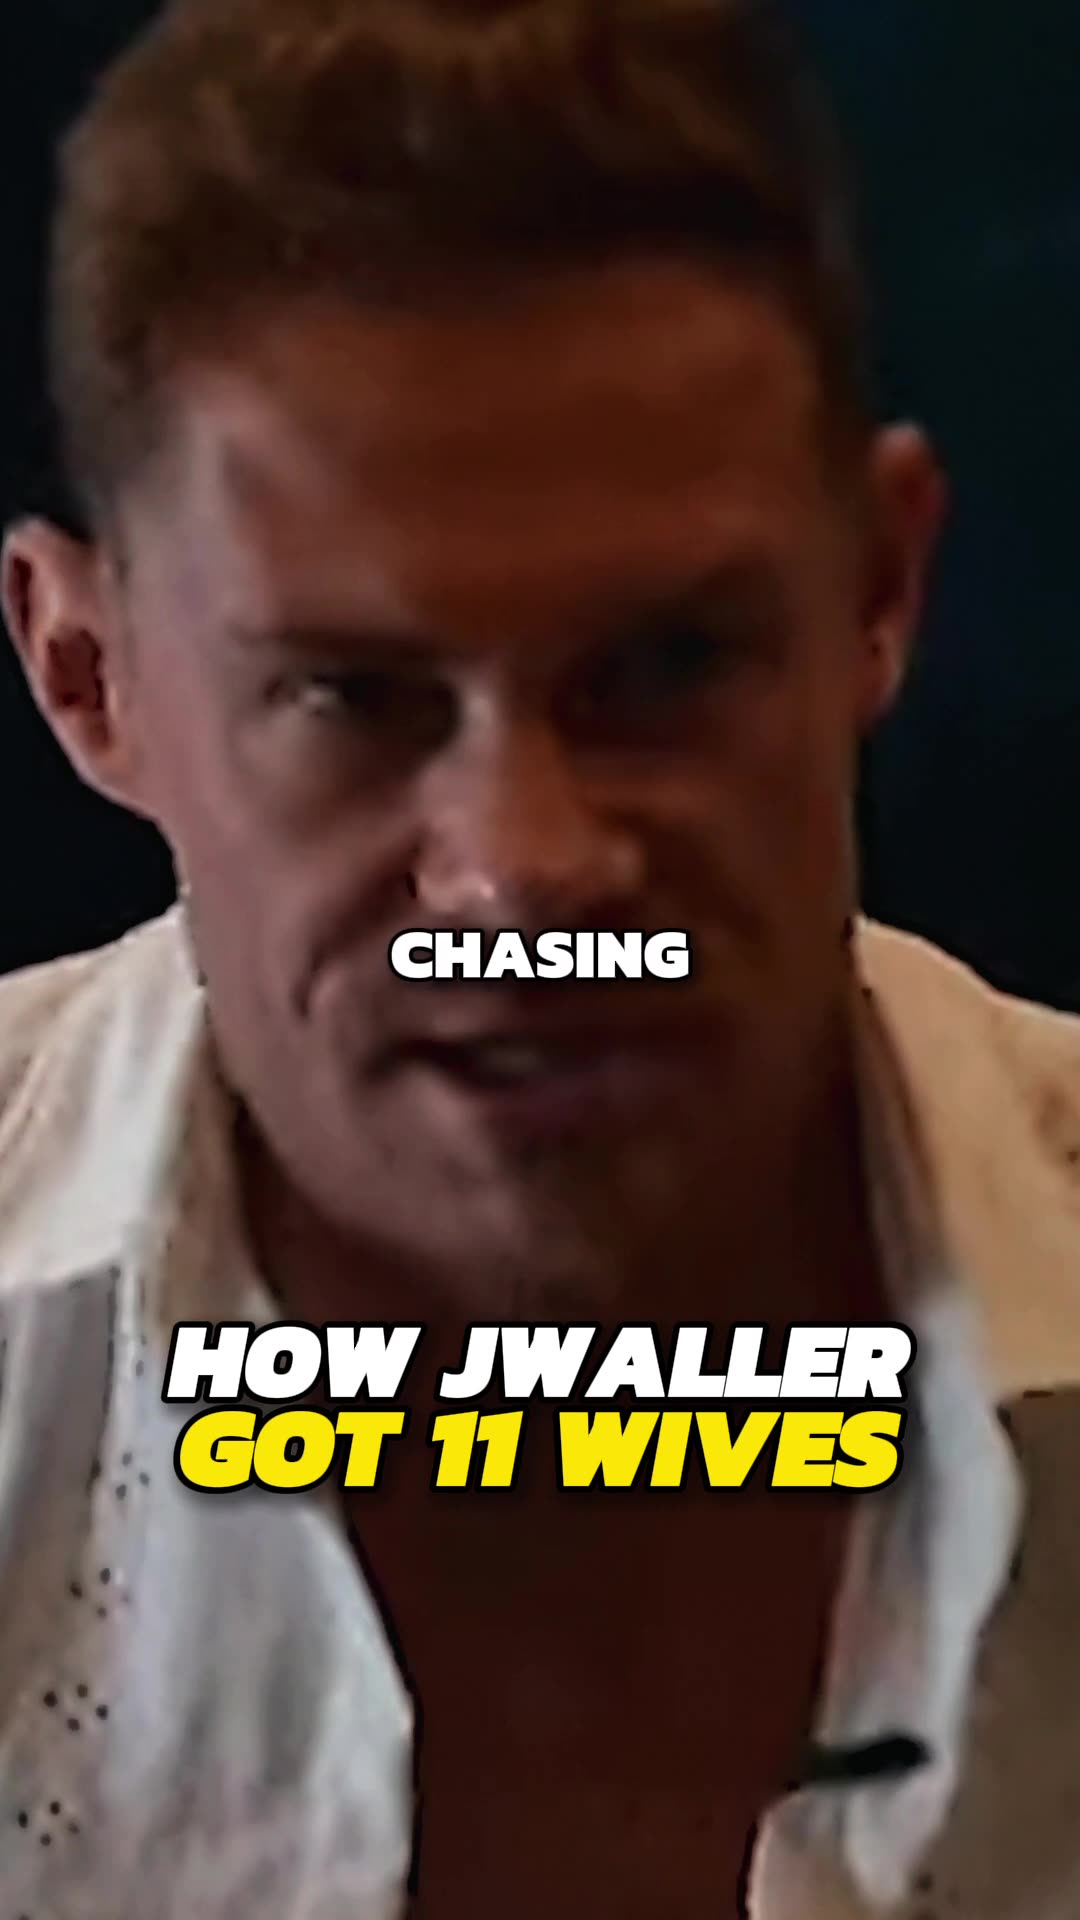 JWaller's Secret Trick That Got Him 11 Wives